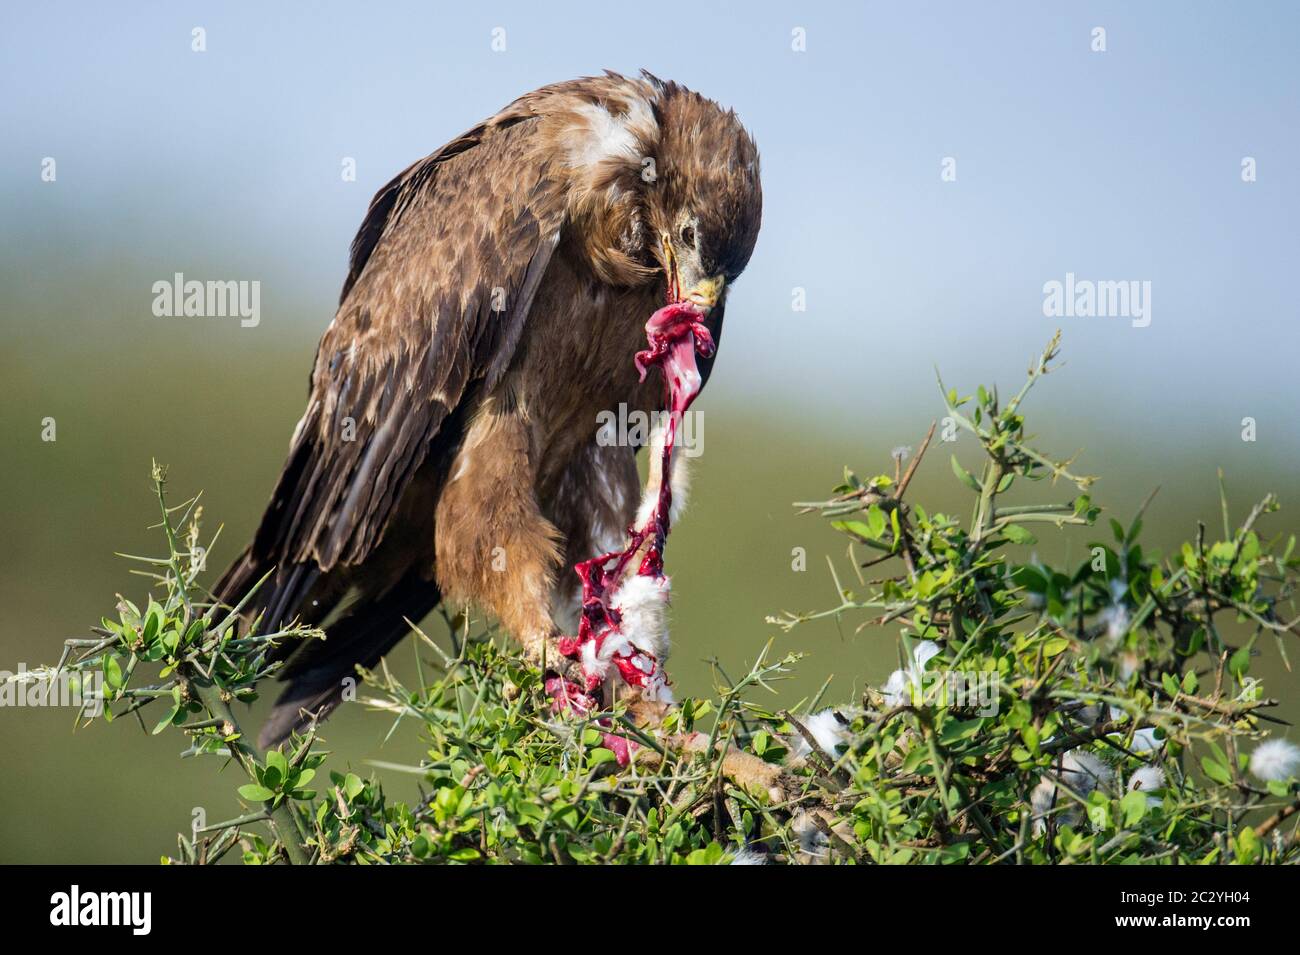 Close up of tawny eagle (Aquila rapax) while eating, Ngorongoro Conservation Area, Tanzania, Africa Stock Photo